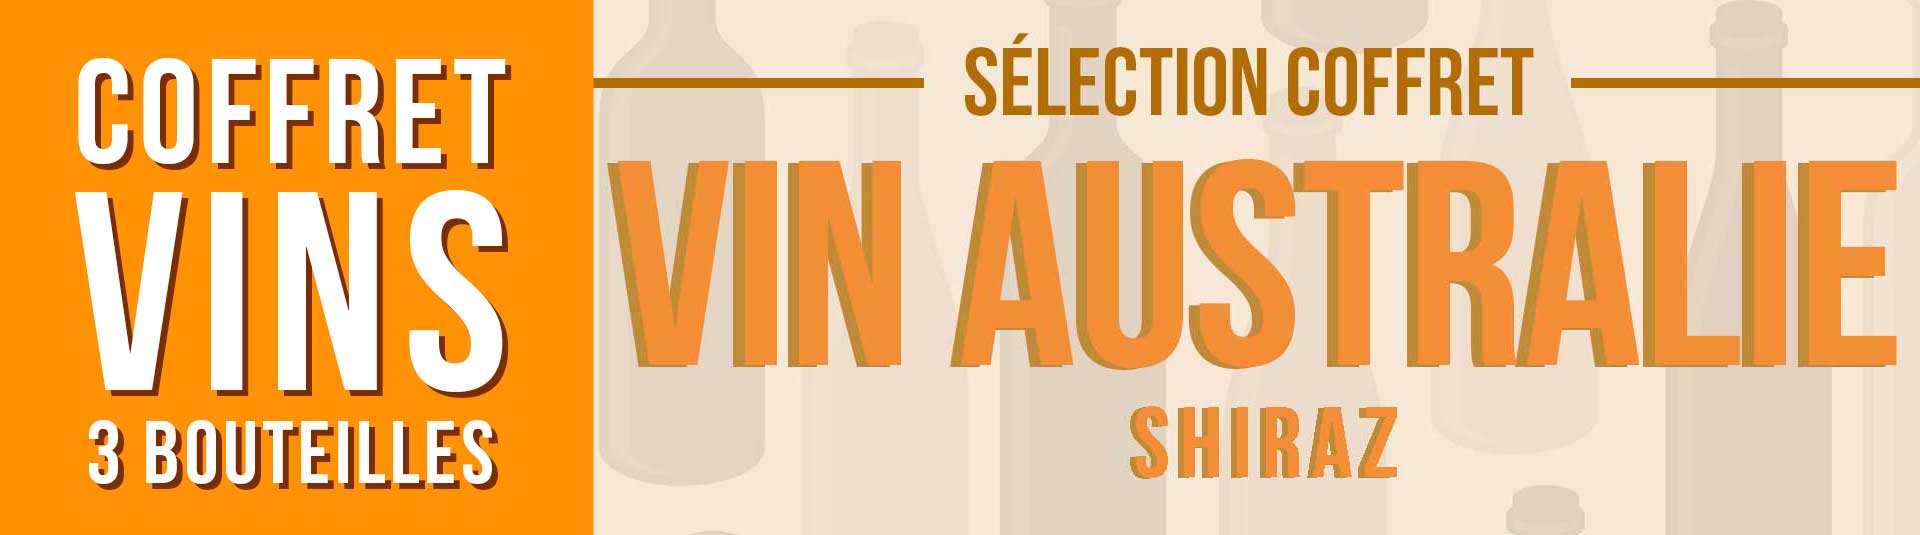 Coffret vin Australie Shiraz Sélection 3 bouteilles